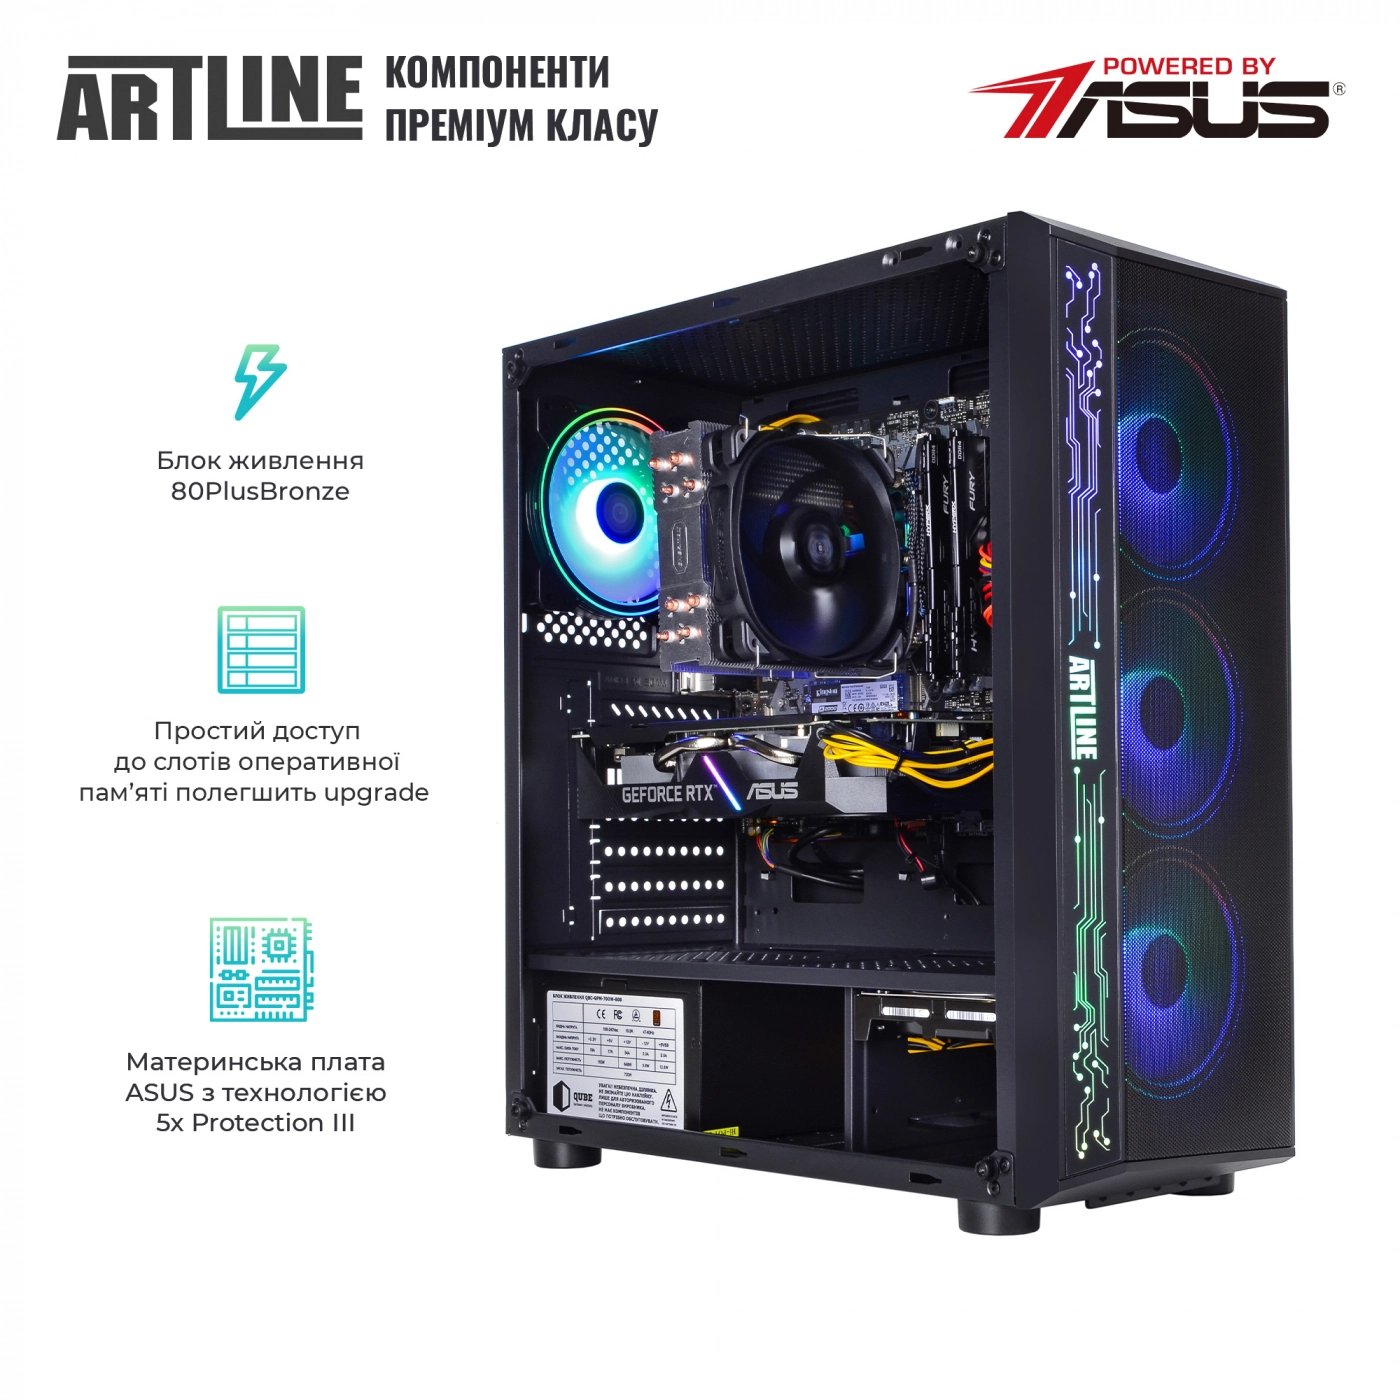 Купить Компьютер ARTLINE Gaming X56v21 - фото 2